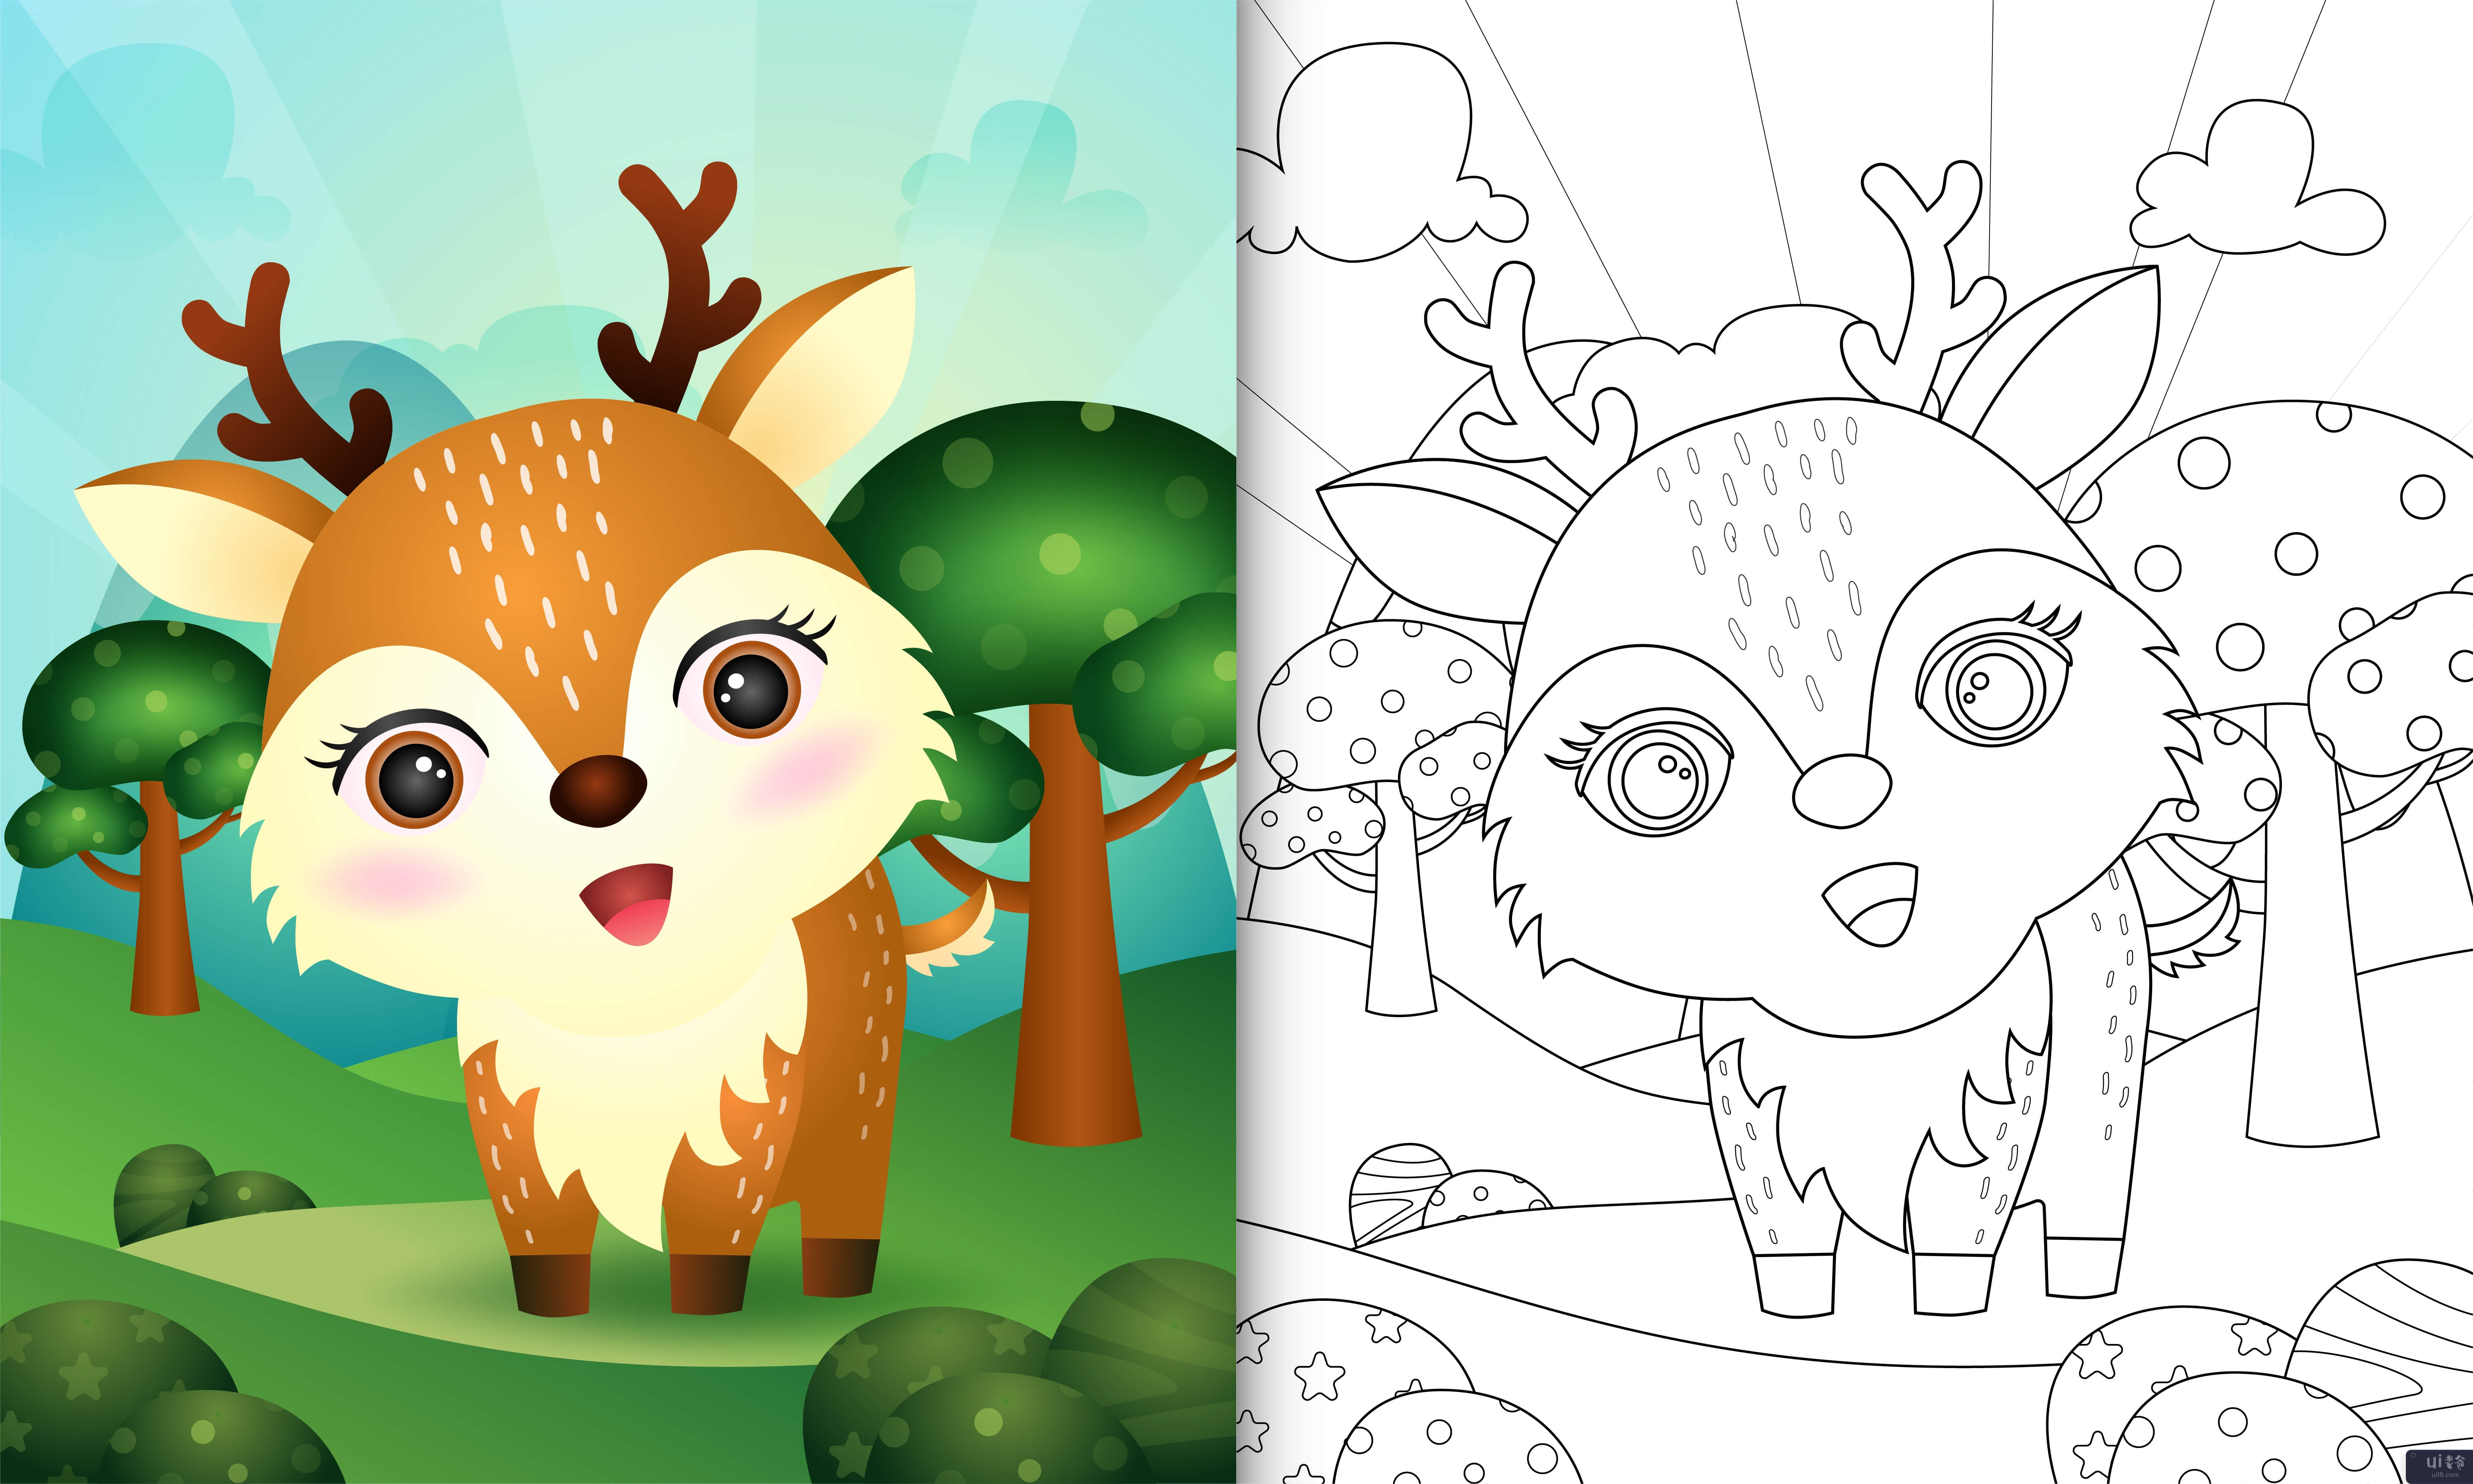 带有可爱鹿角色插图的儿童着色书(coloring book for kids with a cute deer character illustration)插图2